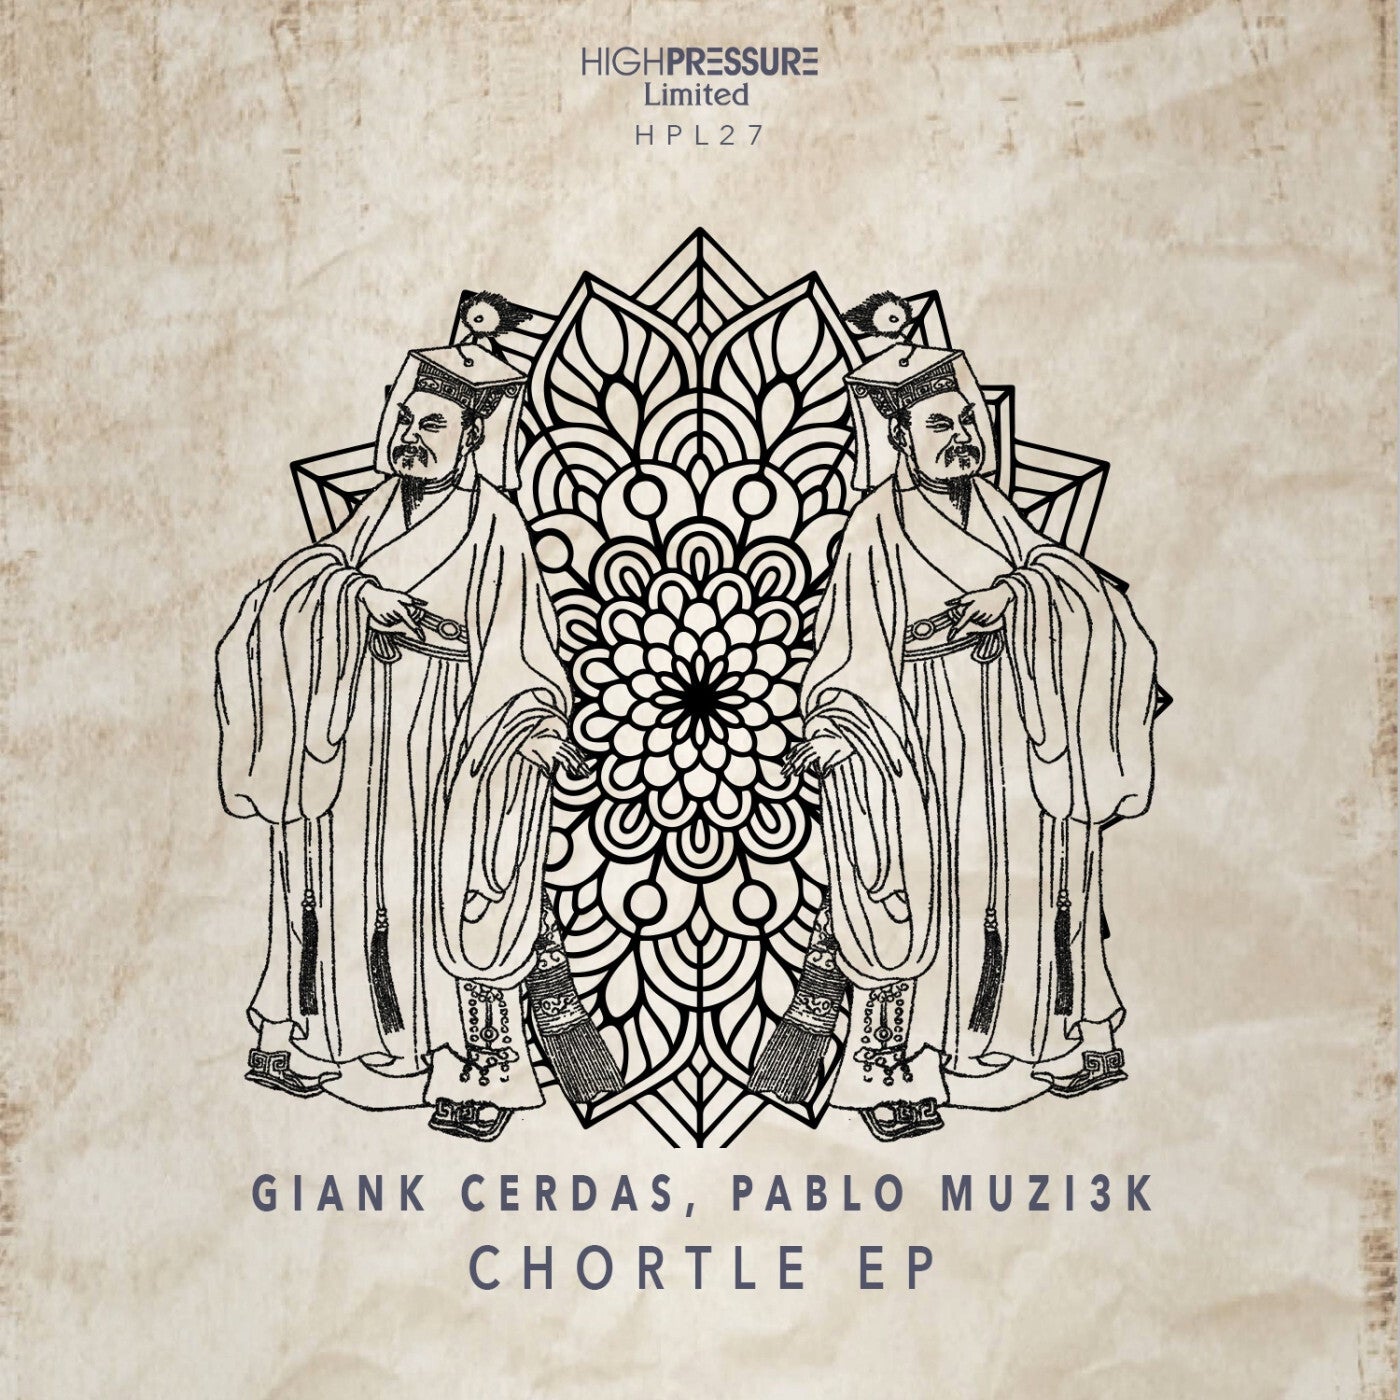 Chortle EP